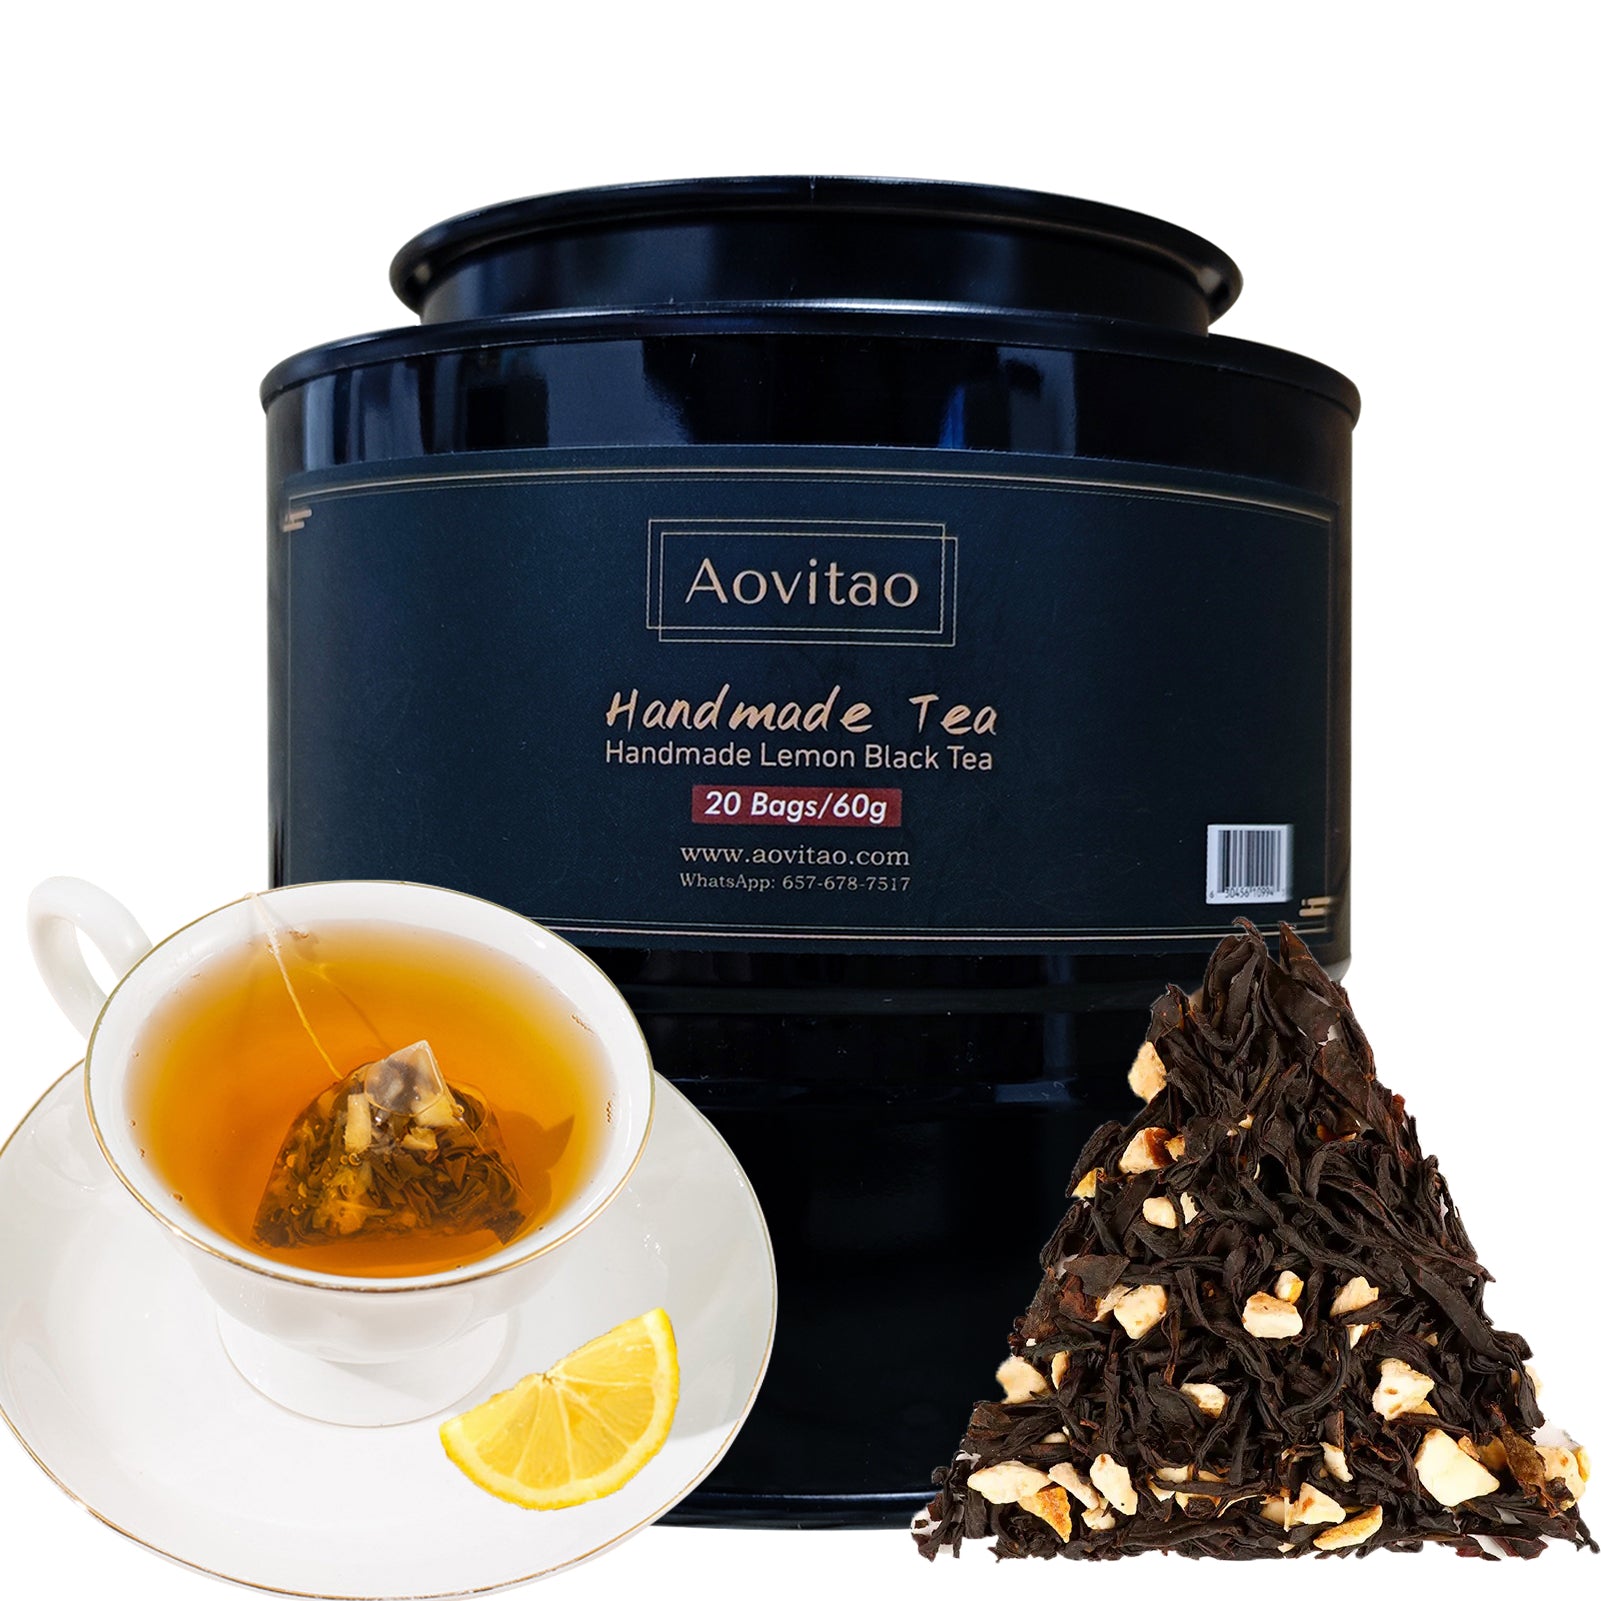 Handmade Lemon Black Tea Premium Pyramid Loose Leaf Tea Herbal Tea Caffeine Free Tea with Lemon,20 bags/60g,Lemon Flavor